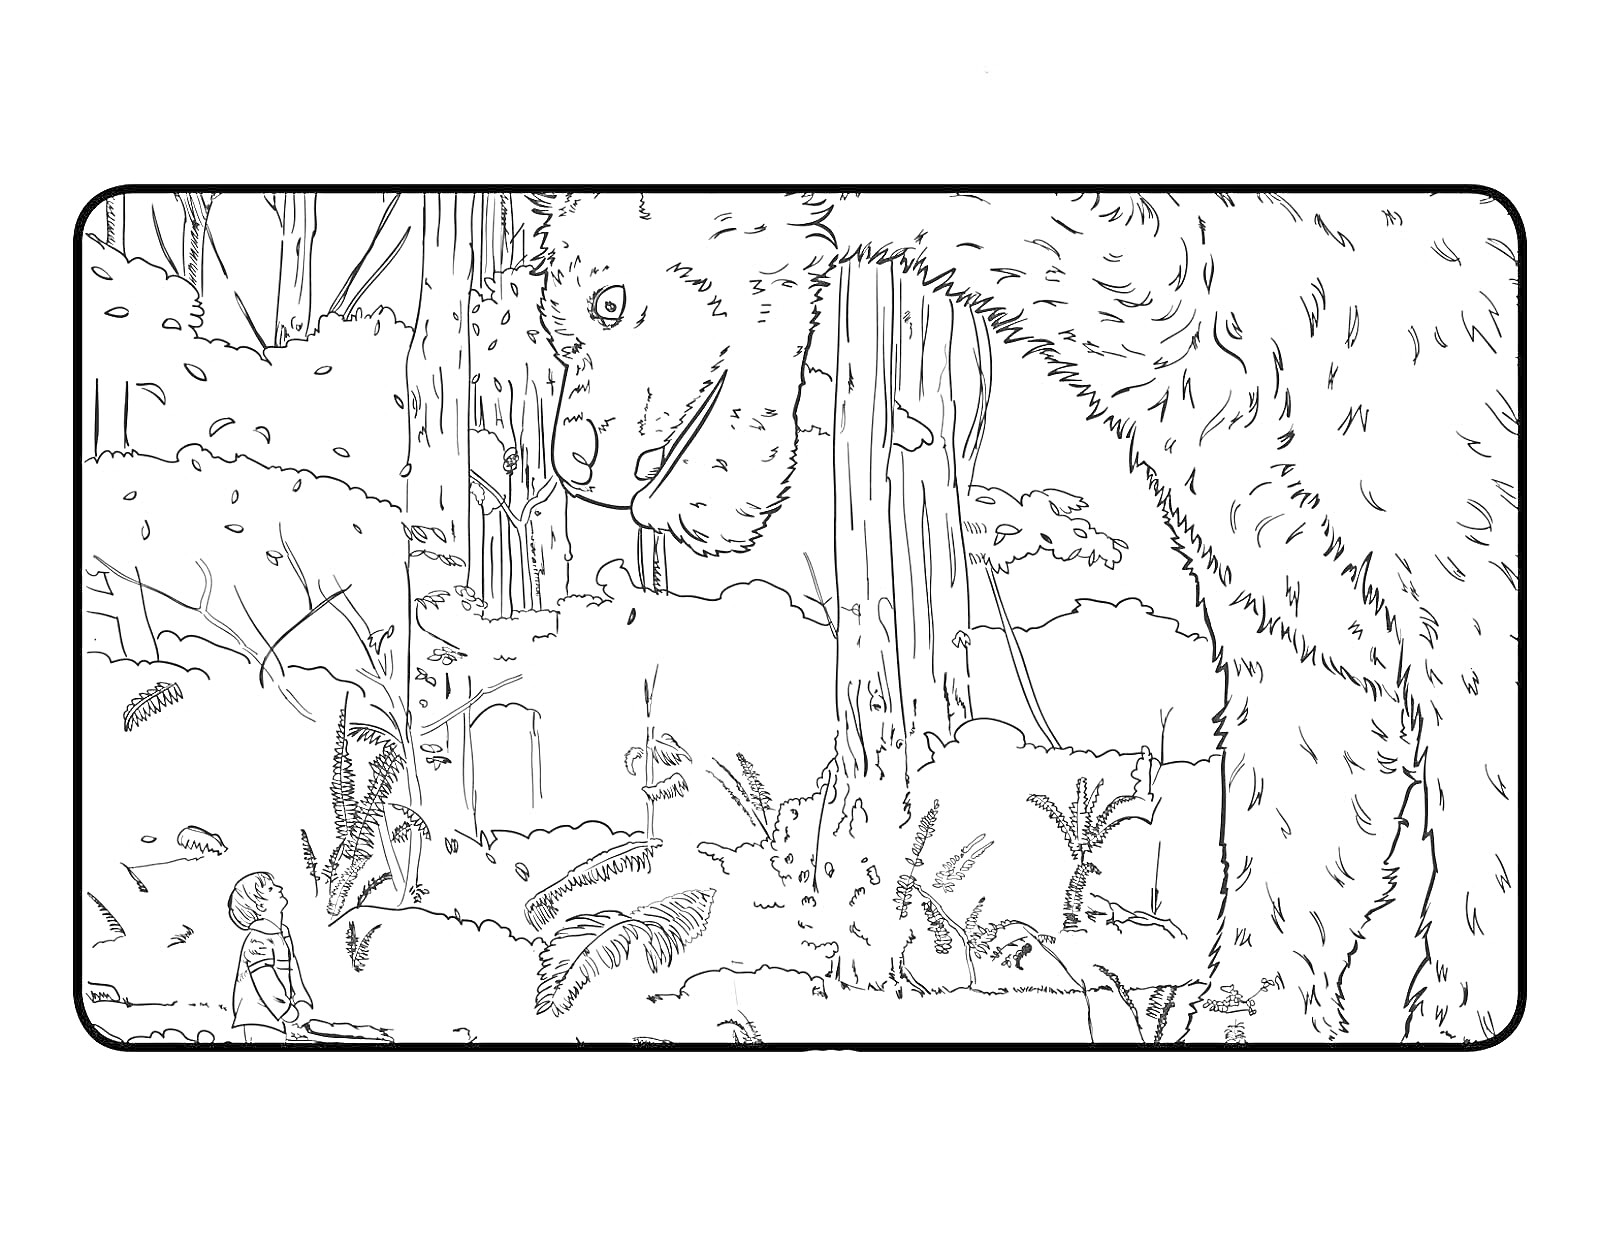 РаскраскаПит и его дракон в лесу: мальчик, дракон, деревья и кустарники